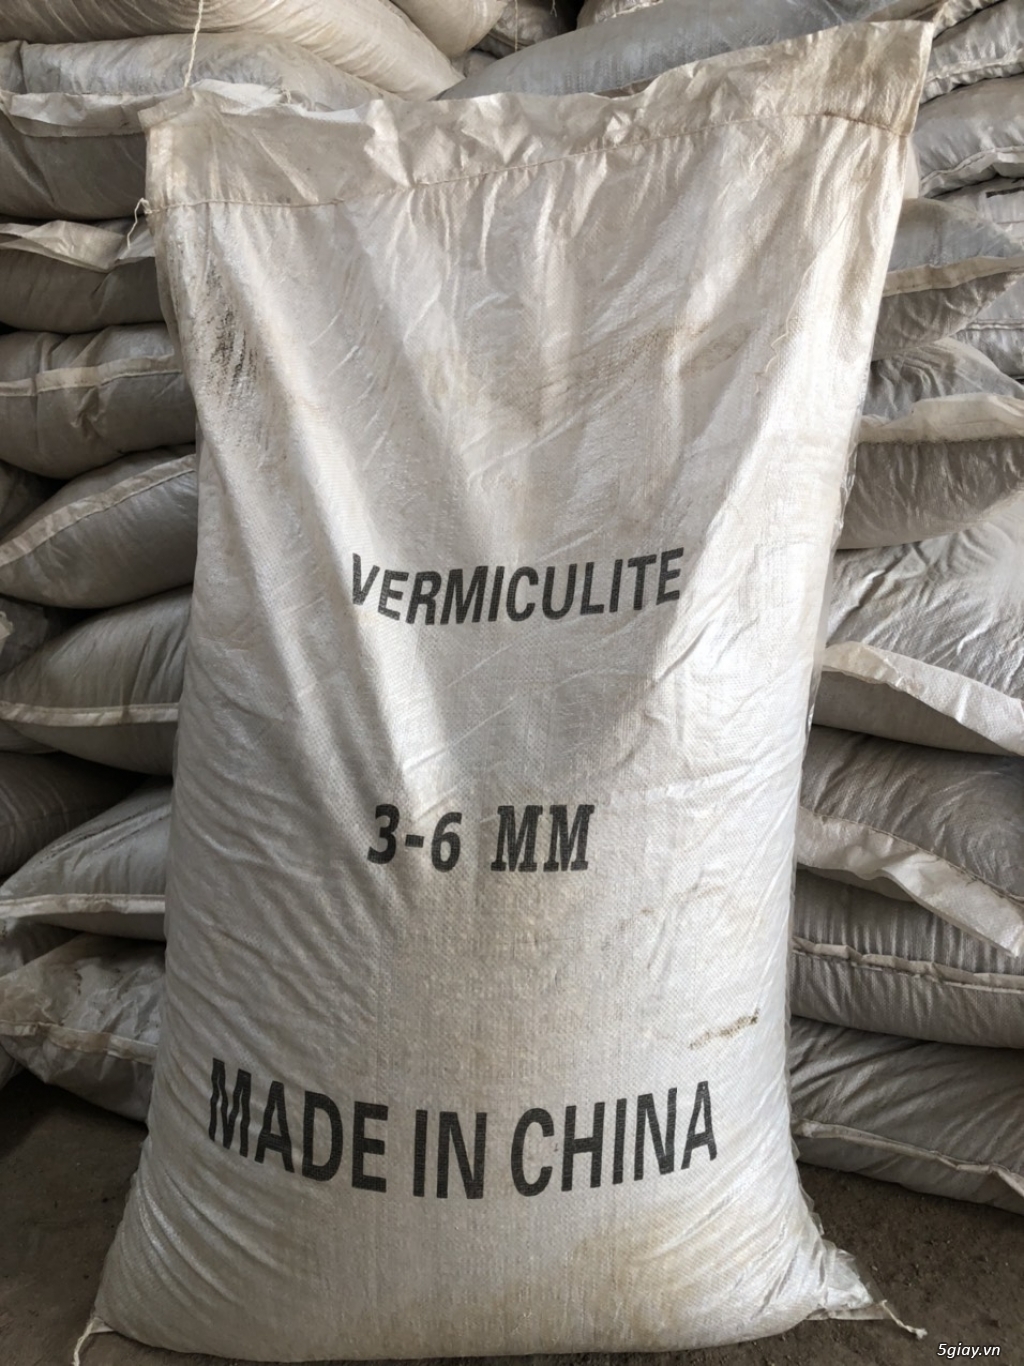 Cung cấp số lượng lớn Vermiculite làm vườn, xây dựng, công nghiệp - 8